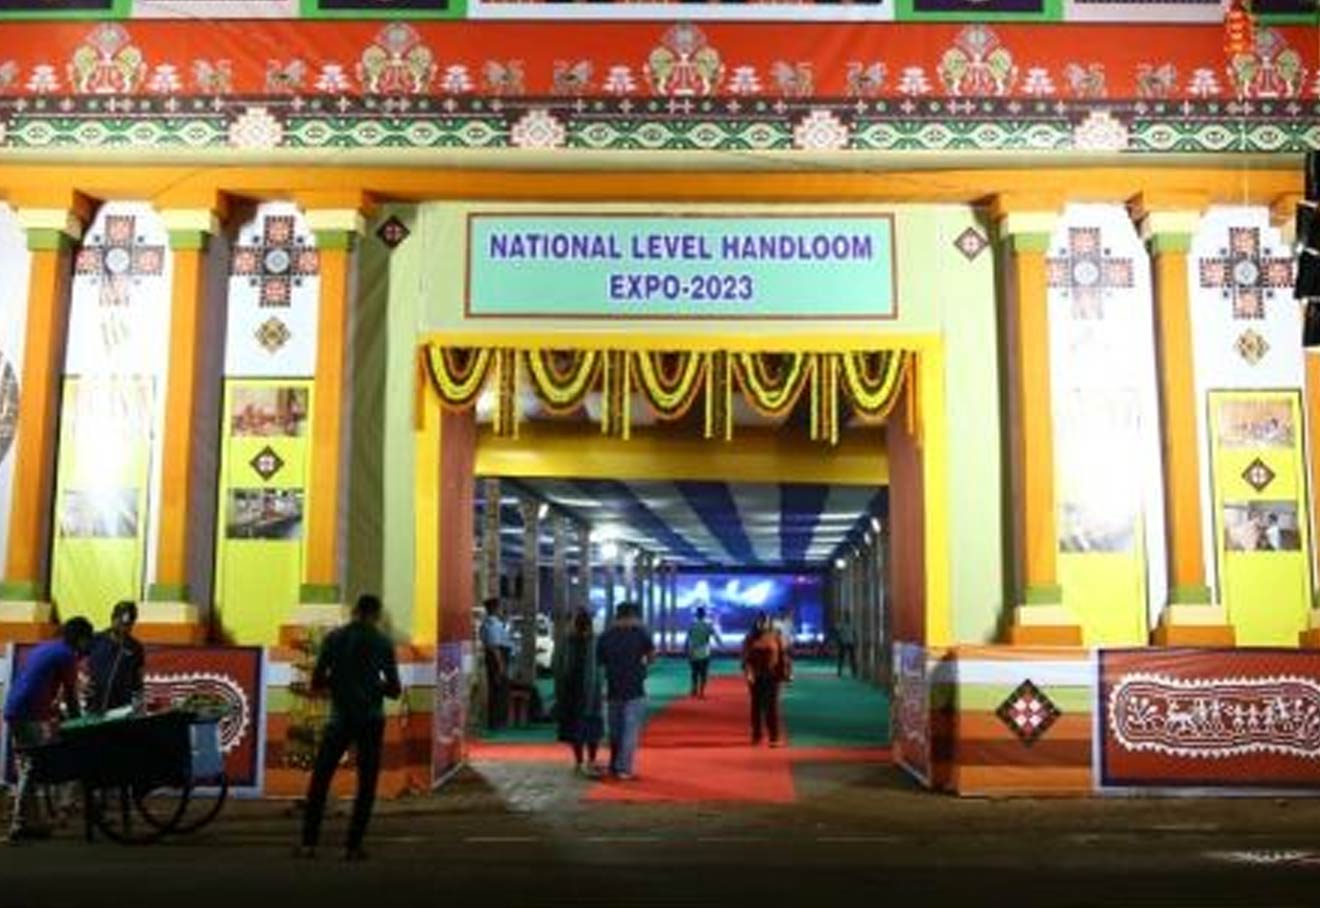 National Level Handloom Expo Underway In Bhubaneswar Till Oct 8